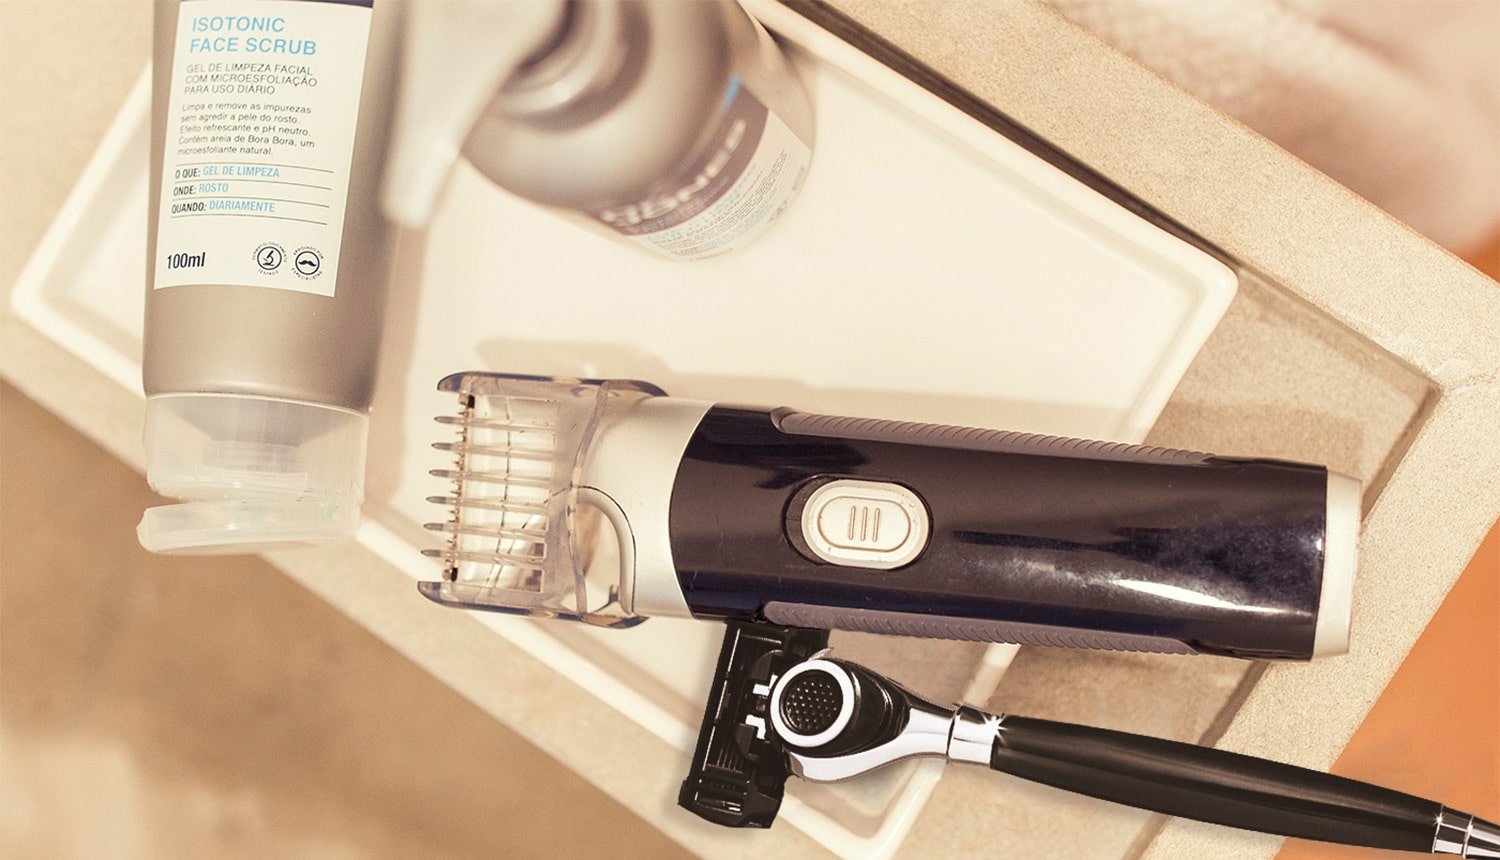 O que é melhor: barbeador elétrico ou lâmina de barbear? - Dr. JONES